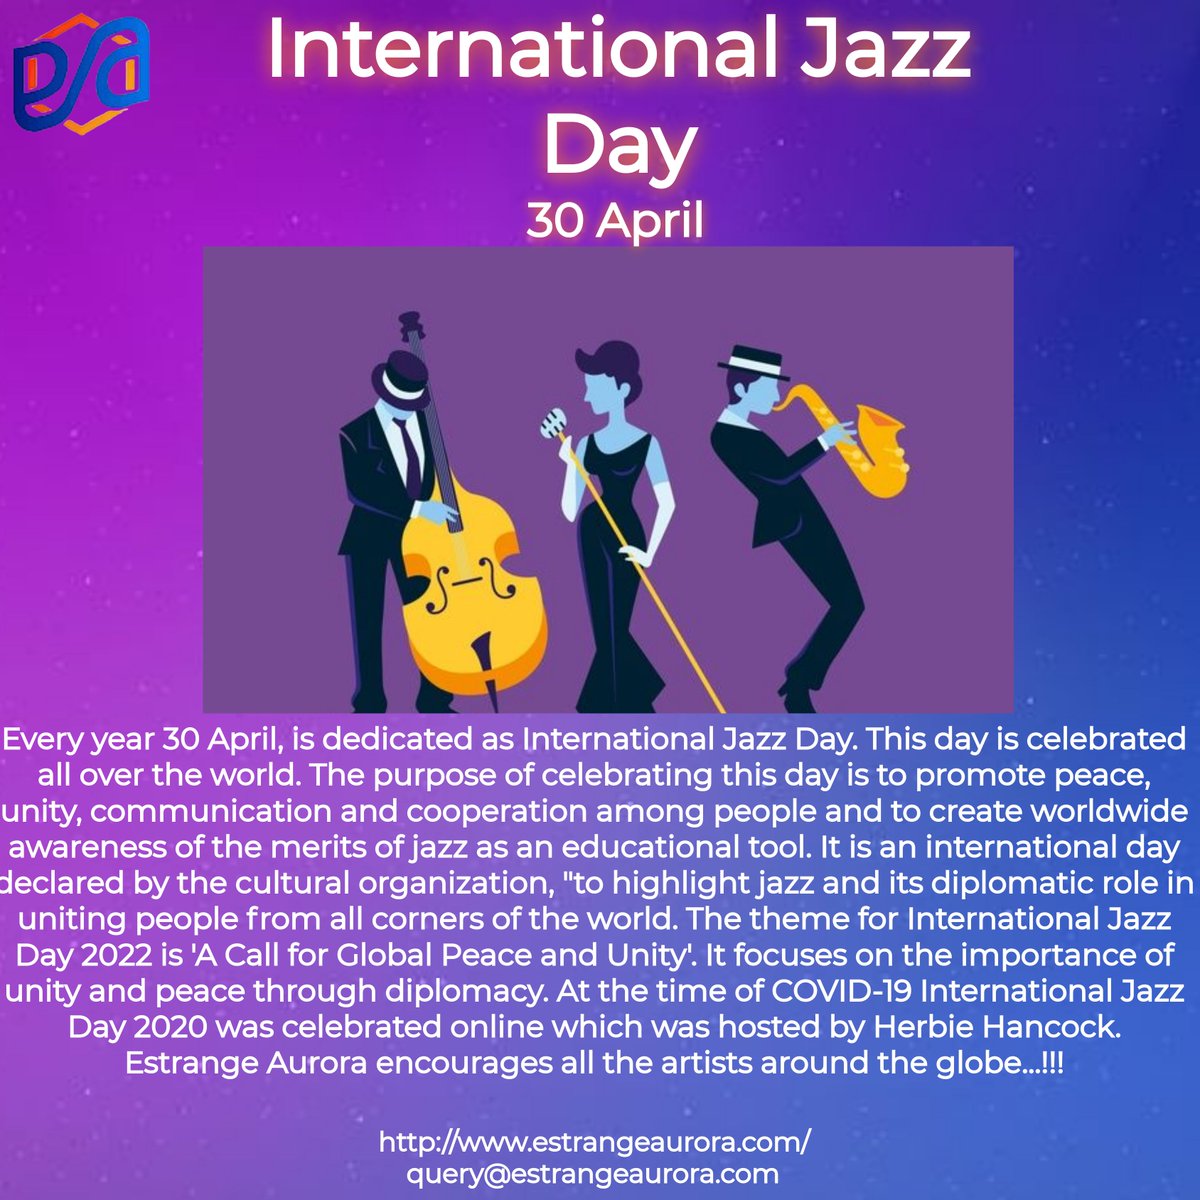 Happy International Jazz Day from Estrange Aurora.
#jazzday #jazz #internationaljazzday #jazzmusic #music #jazzmusician #musician #club #musicians #jazzimprovisation #livemusic #jazzsolo #jazzplayer #jazzmusicians #musicislife #jazztrumpet #jazzsinger #trumpetsolo #EstrangeAurora